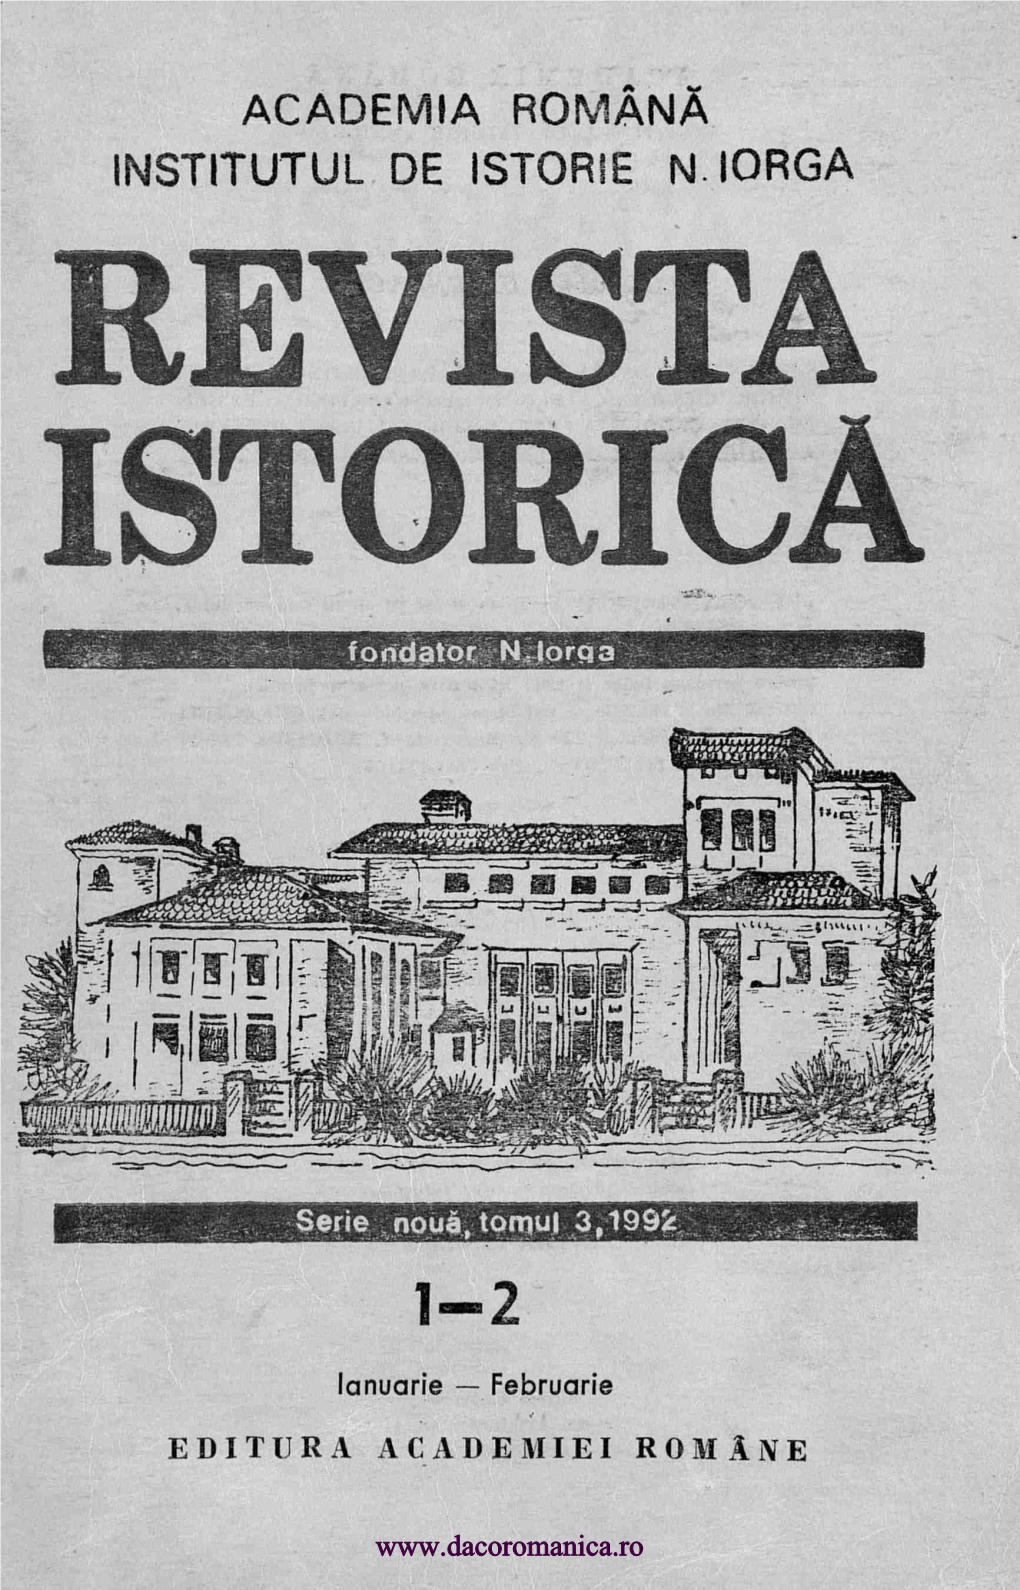 Academia Romana Institutul De Istorie N Iorga Revista 1St S Rica